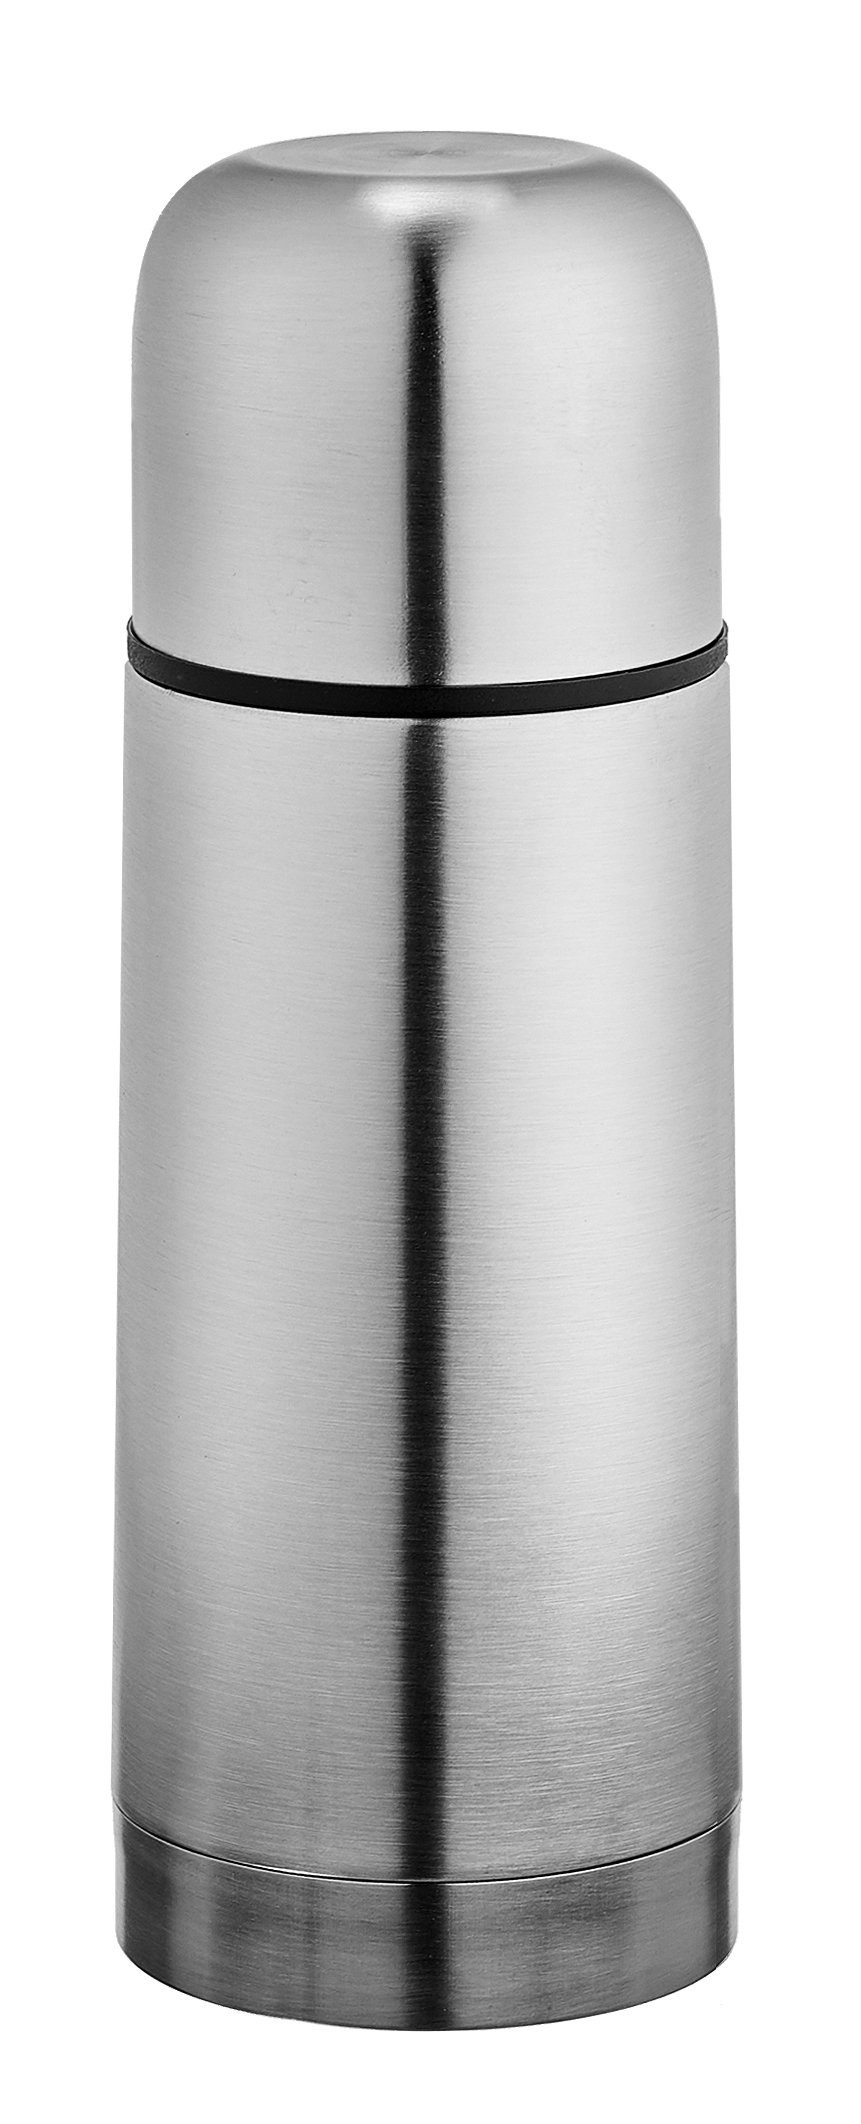 Goldhofer Thermoflasche Edelstahl: Thermoskanne-Flasche kalte und ein Technik, heiße Getränke, Edestahl, für Vaccum Verschluss Knopf